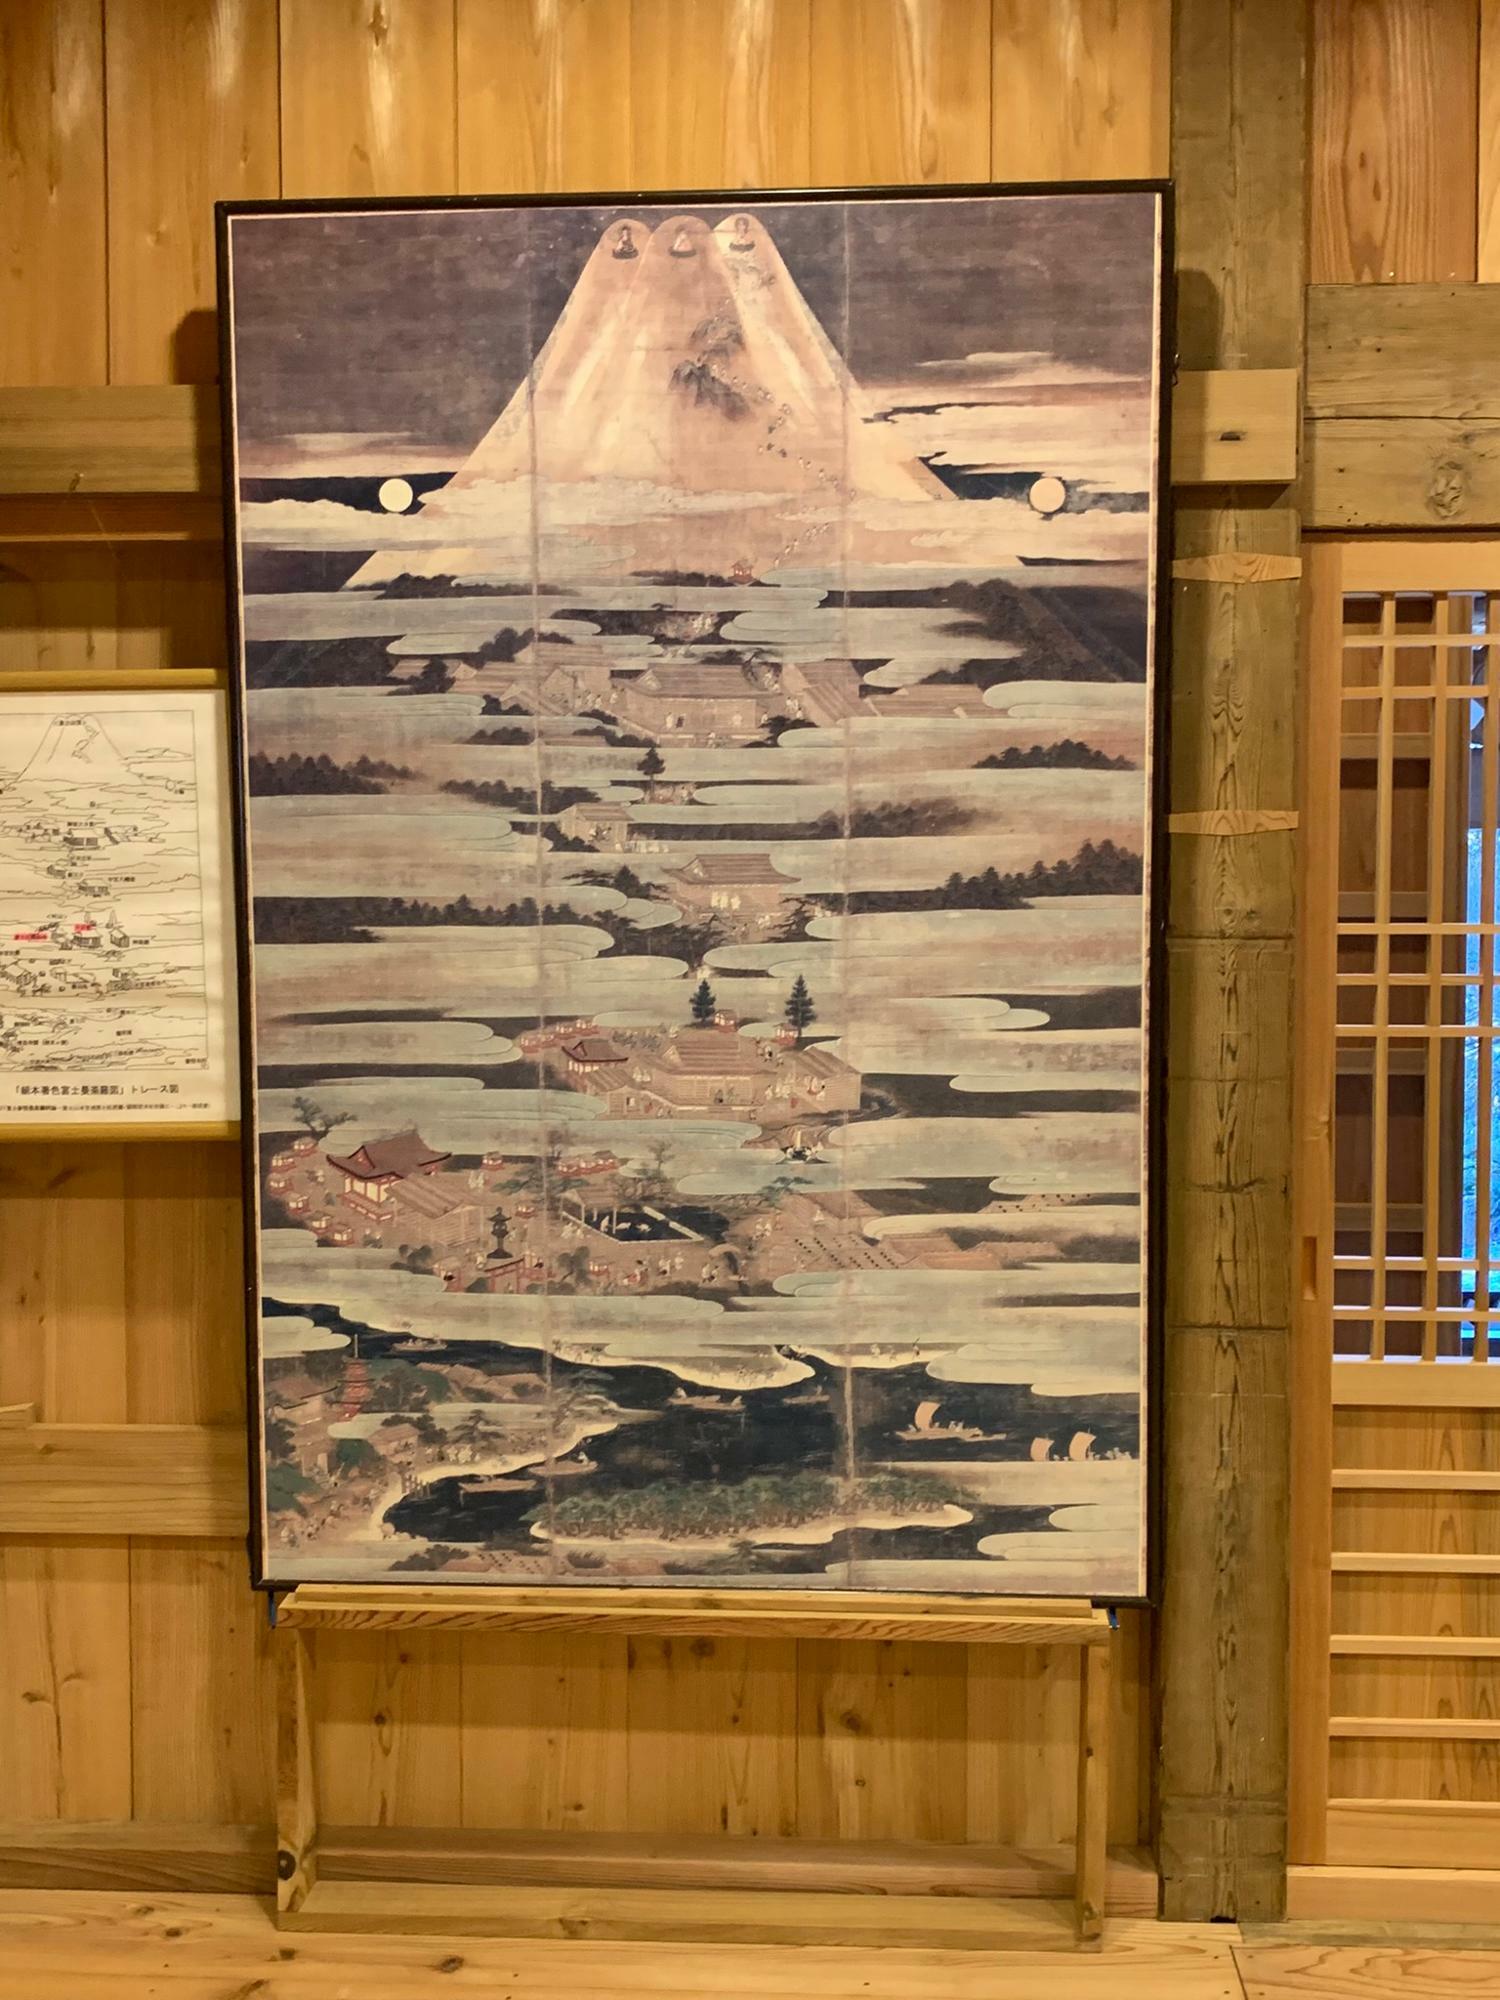 修験者が浅間大社や興法寺で体を清めてから富士山頂を目指す様子が描かれています